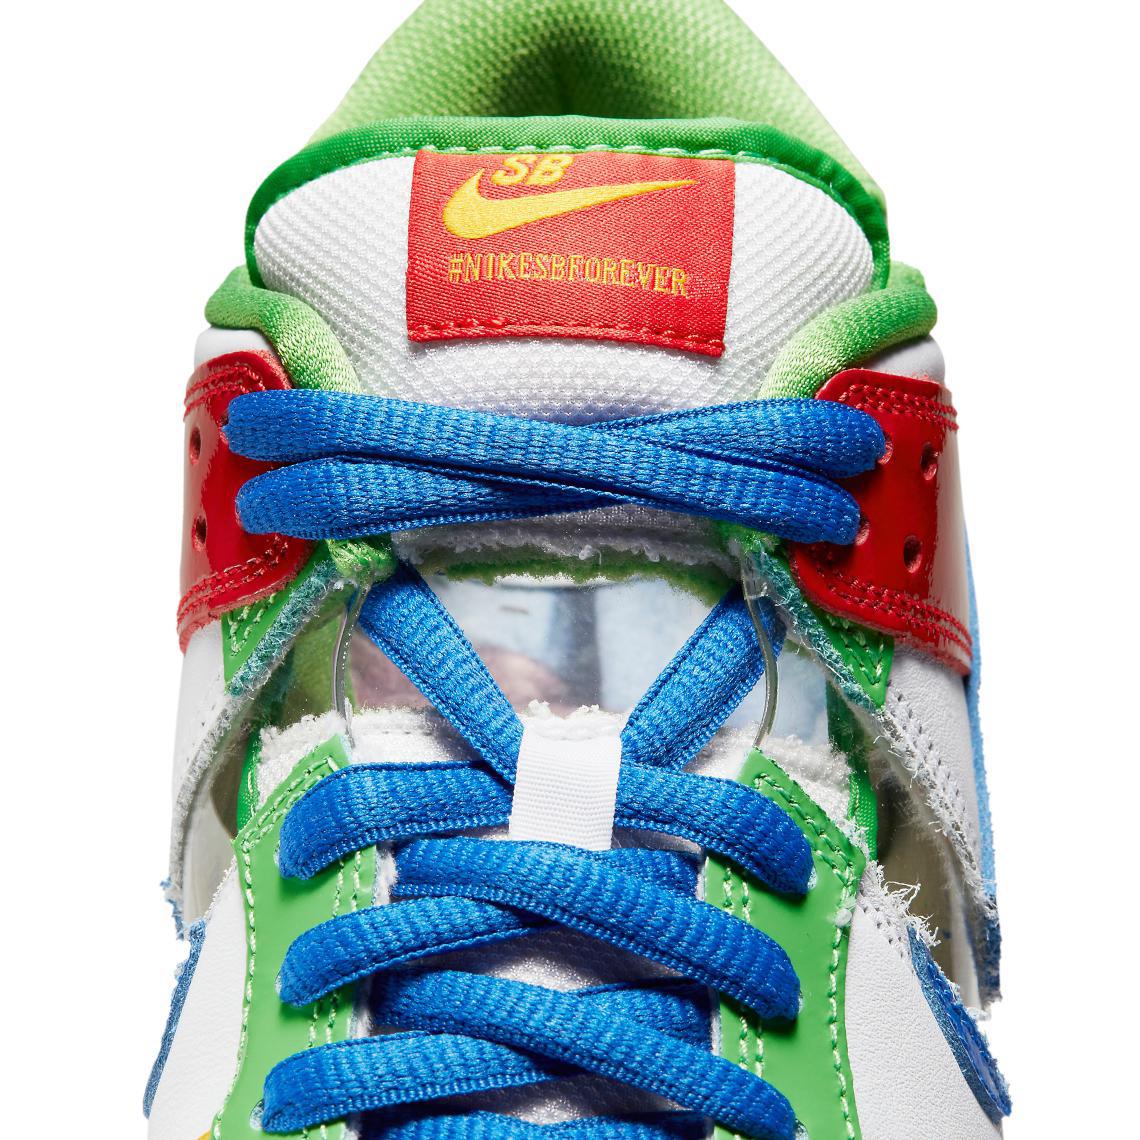 L'héritage de Sandy Bodecker se poursuit avec la vente aux enchères caritative Nike SB eBay Dunk.